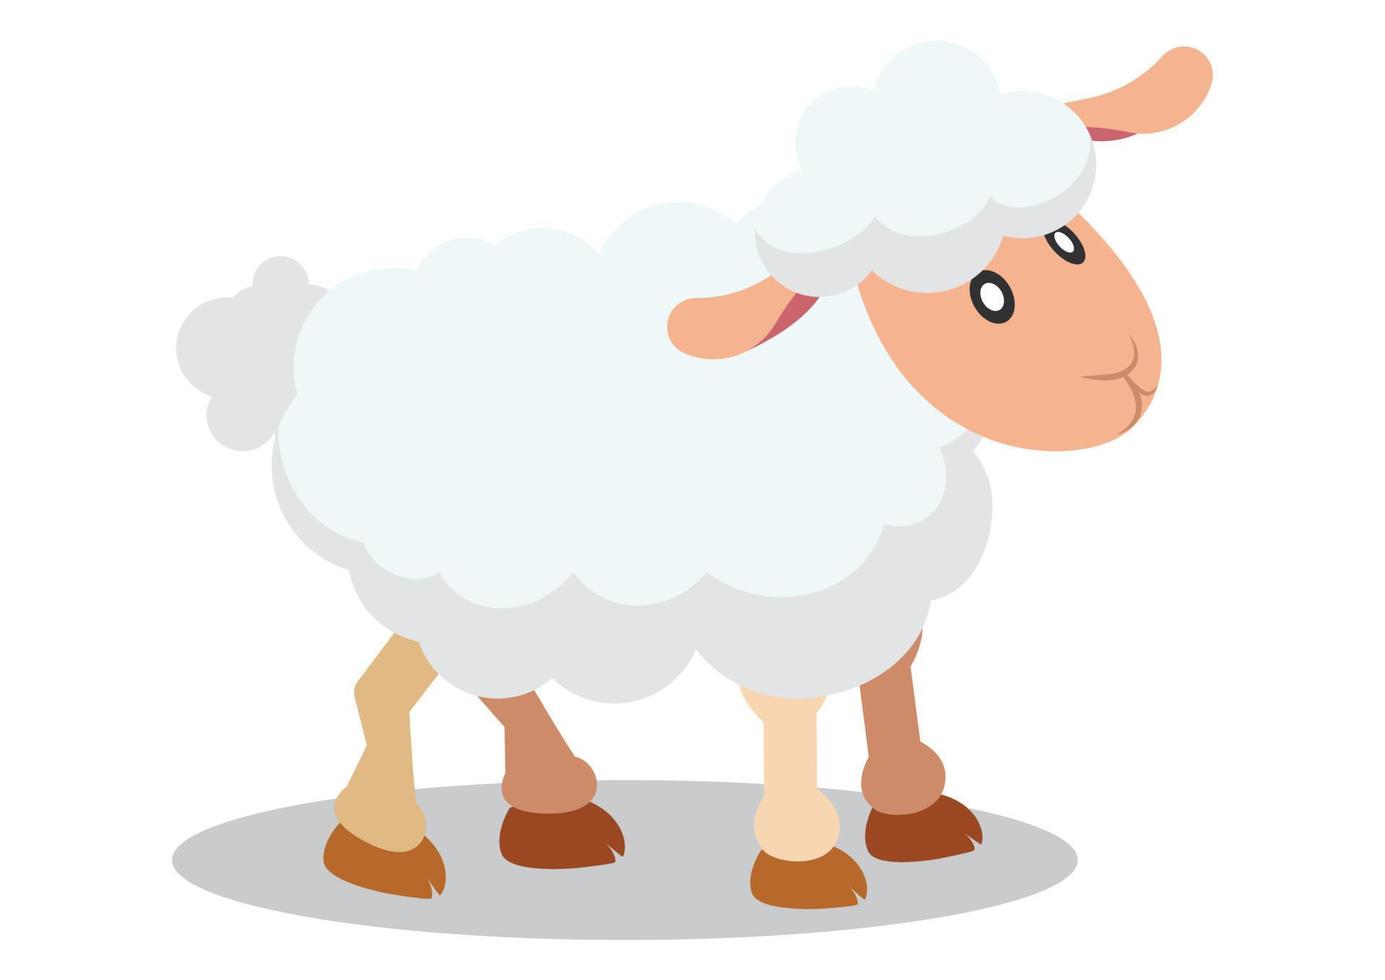 desenho vetorial plana de ovelhas. ovelha dos desenhos animados isolada no fundo branco vetor